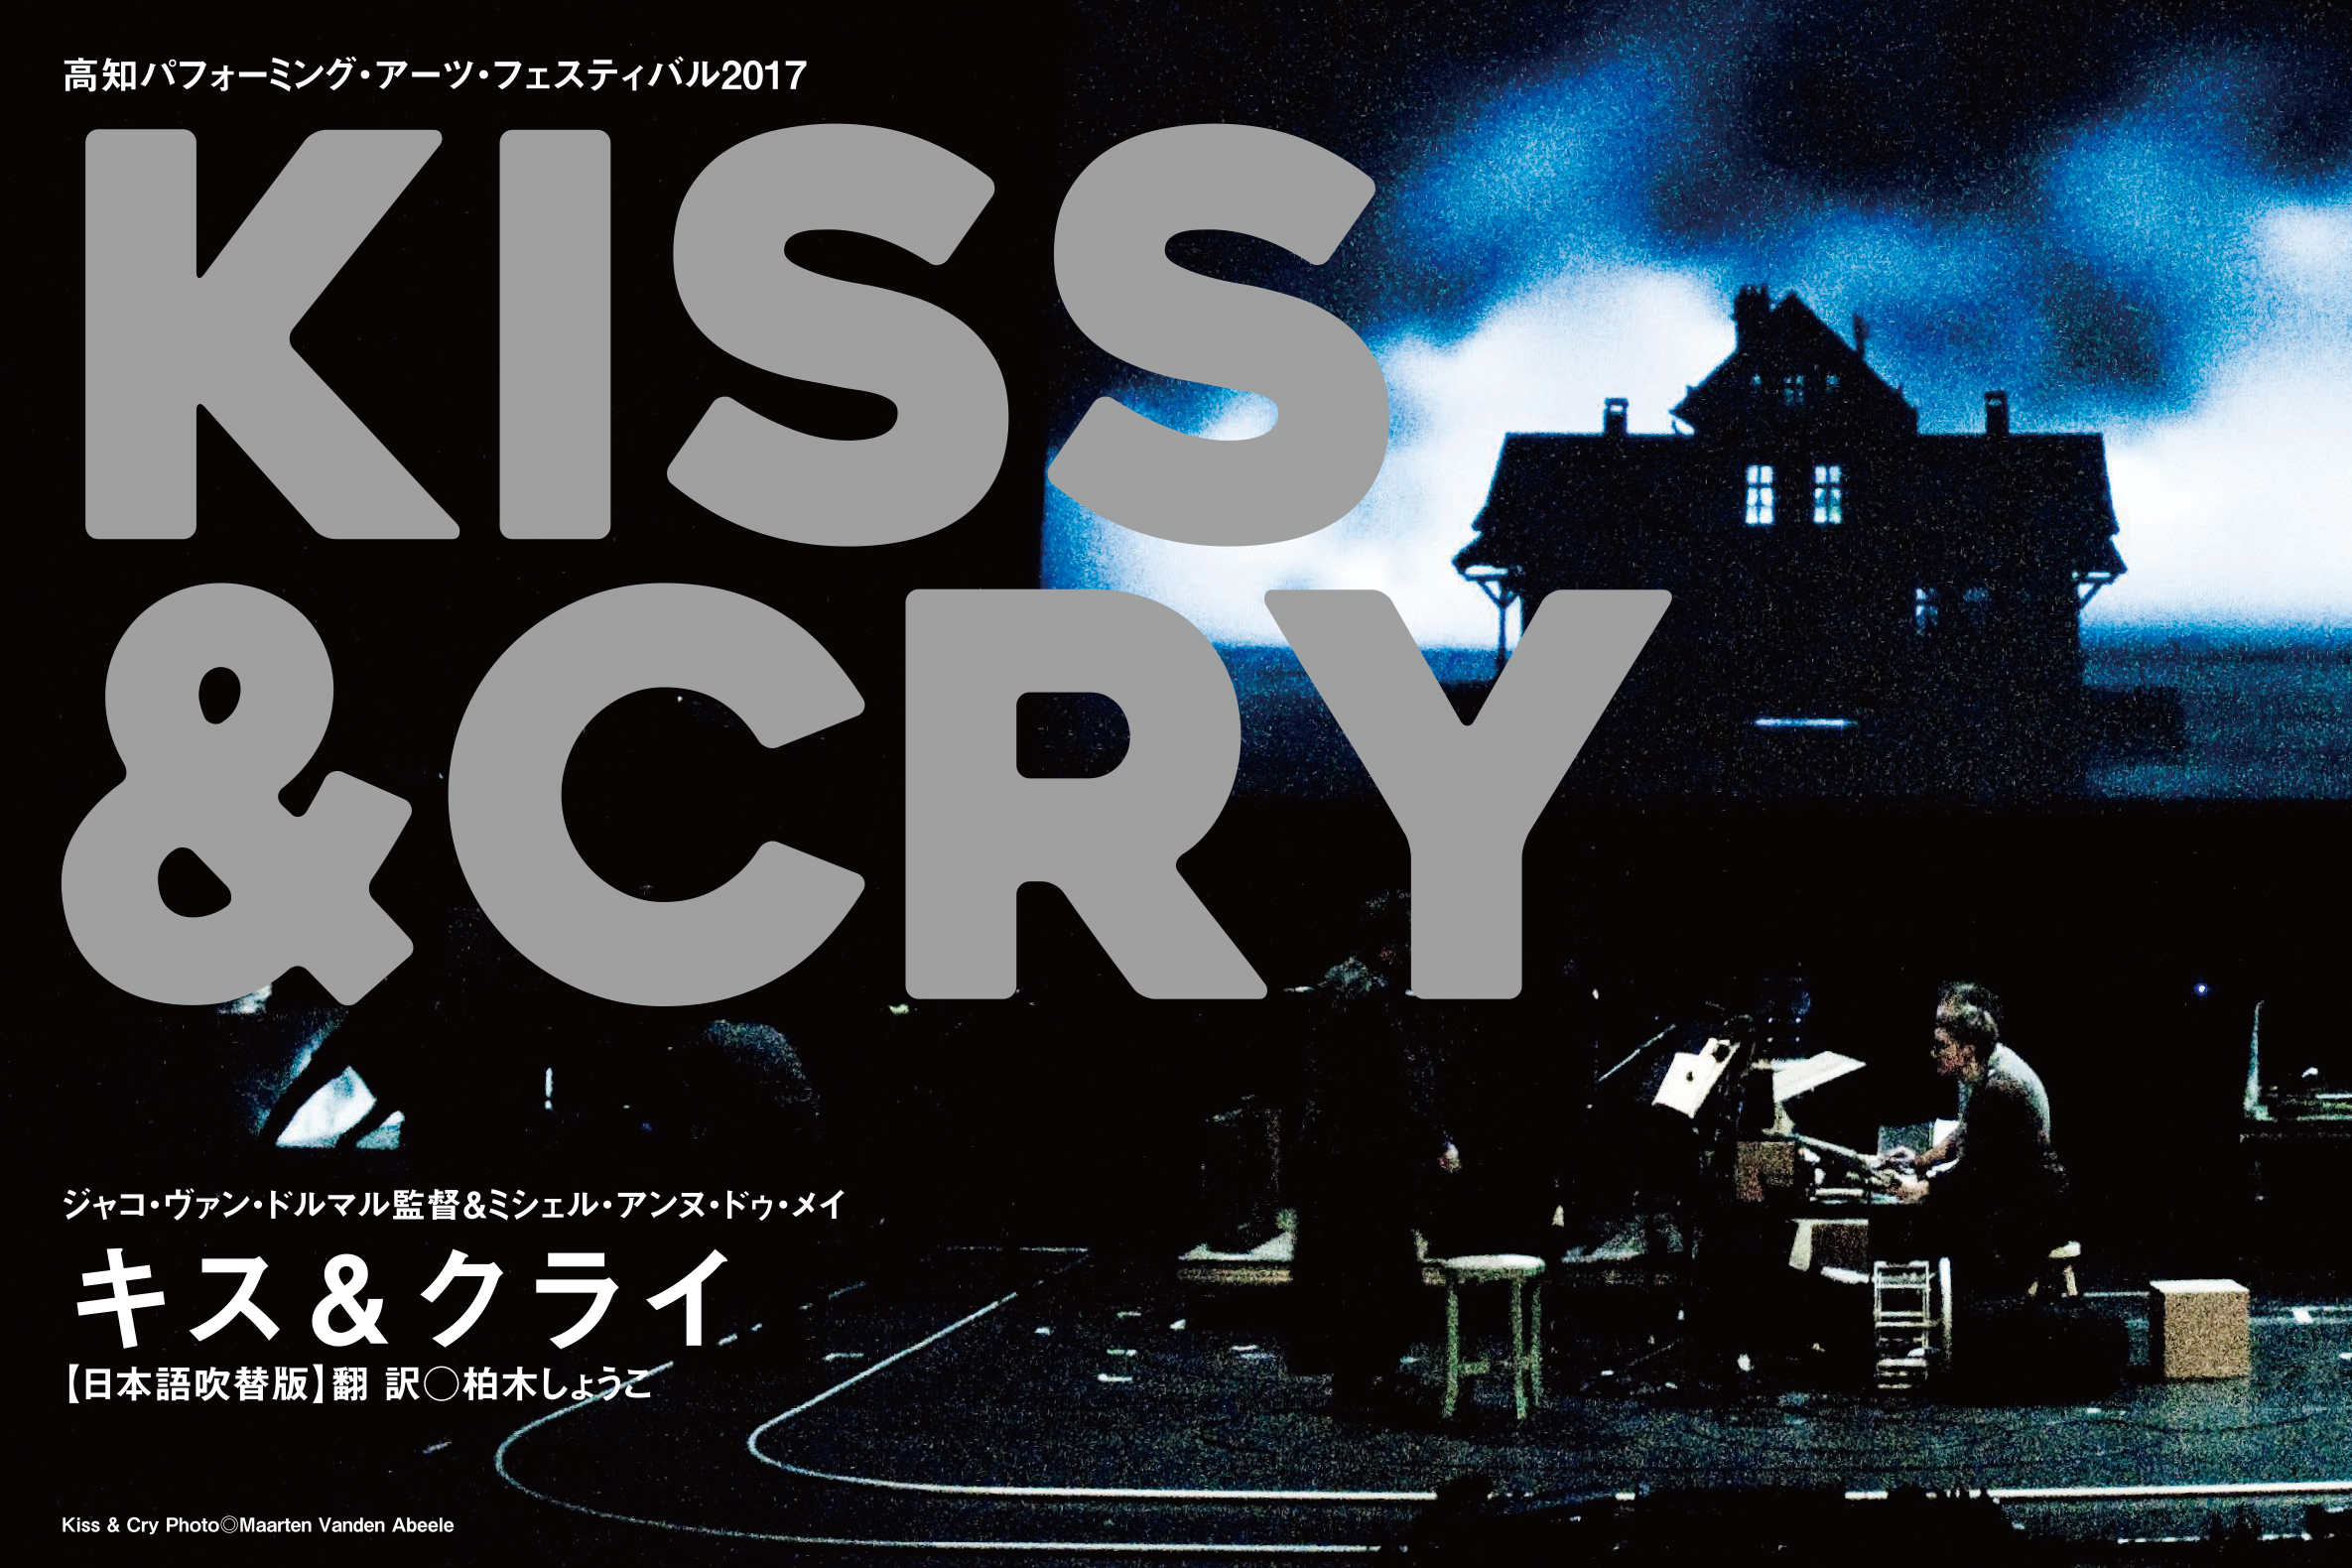 高知県立美術館 『KISS & CRY 』